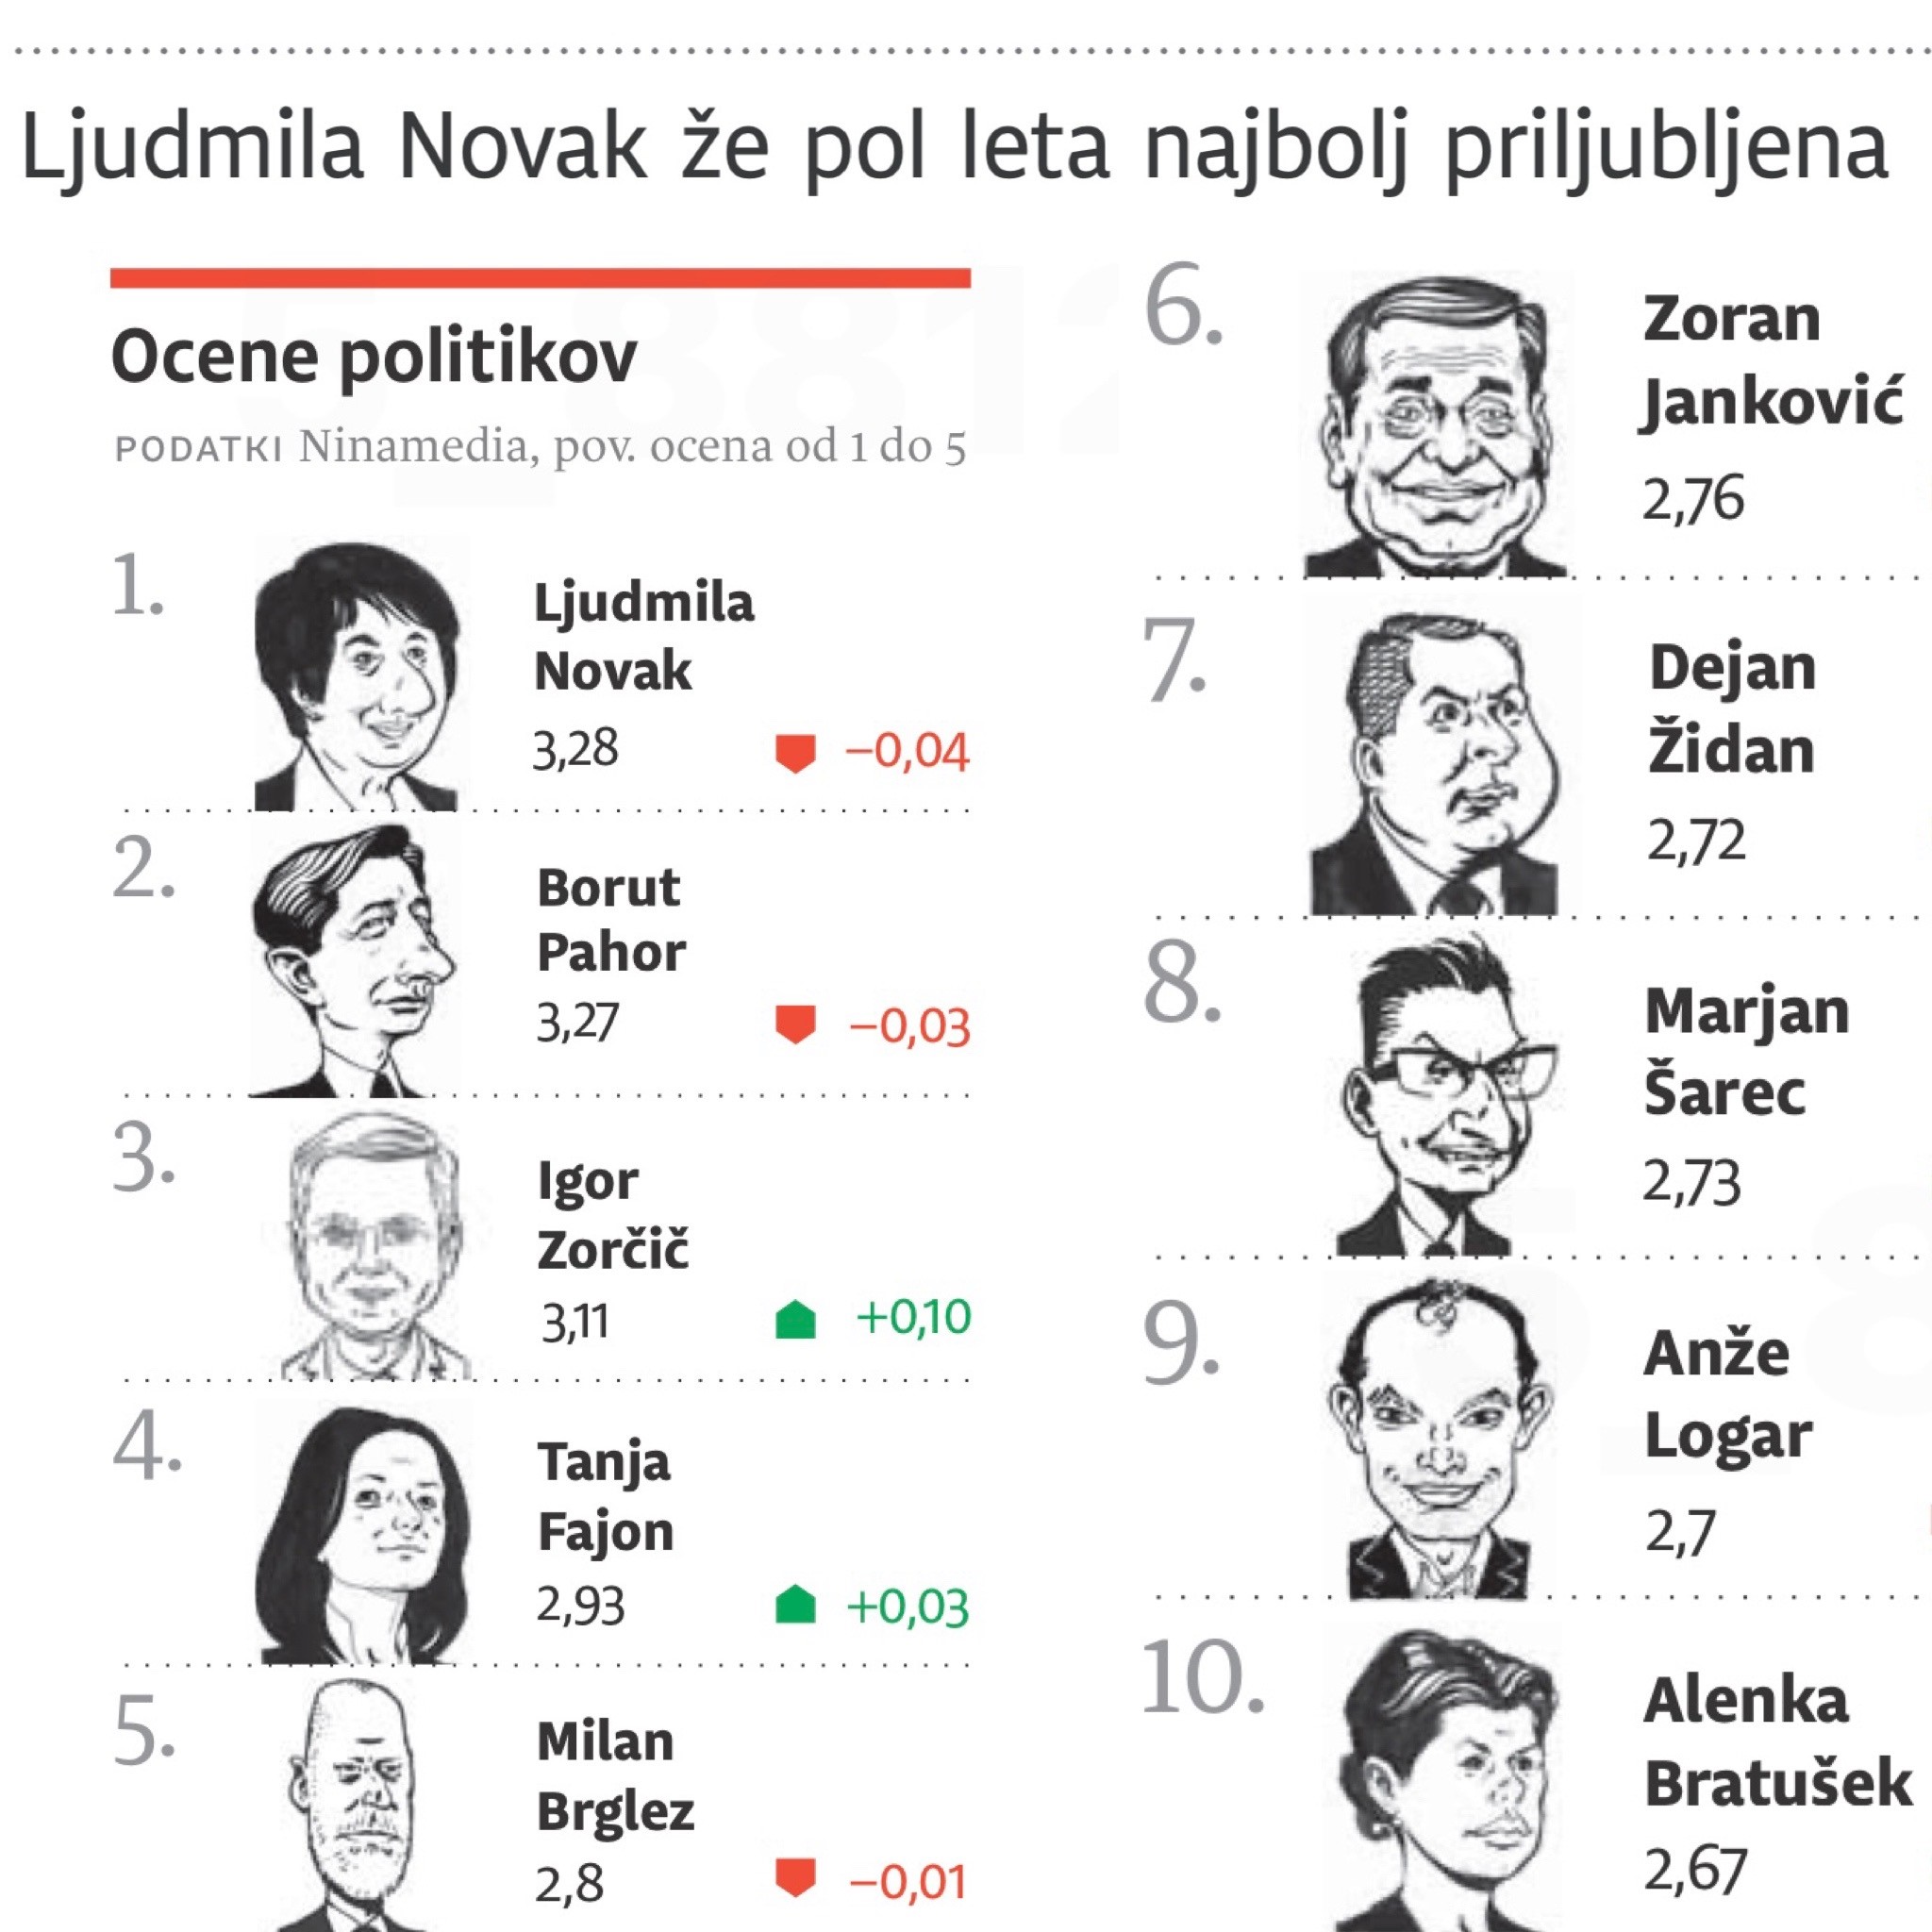 “Če kaj, potem je v politiki najtežje ostati zvest samemu sebi” – Ljudmila Novak ob novici, da je “kot krščanska demokratka že 6 mesecev zapored najbolj priljubljena politična osebnost”